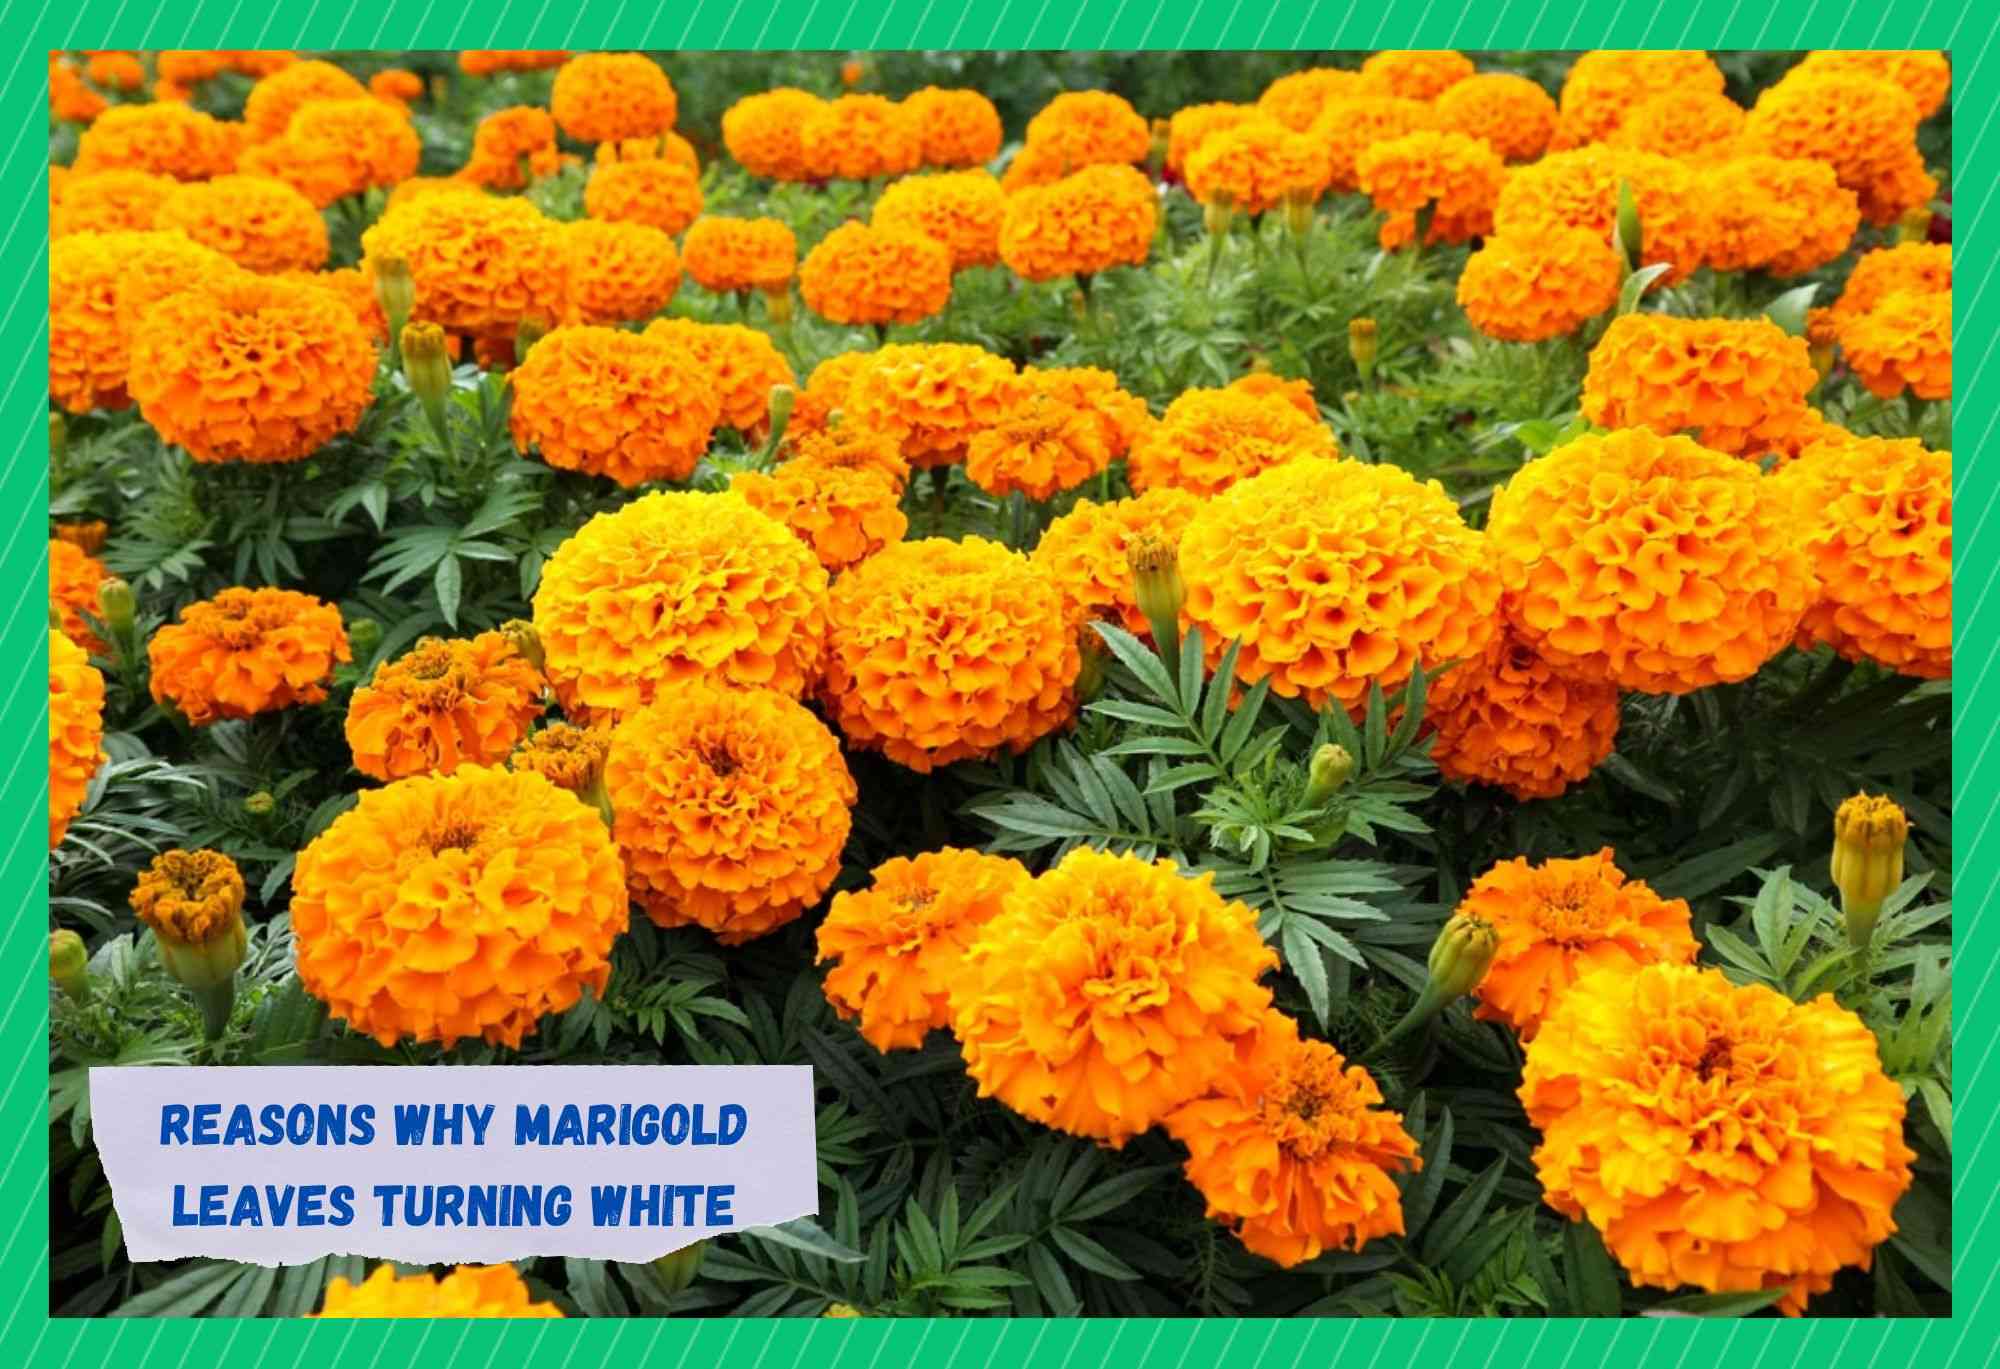 marigold leaves turning white